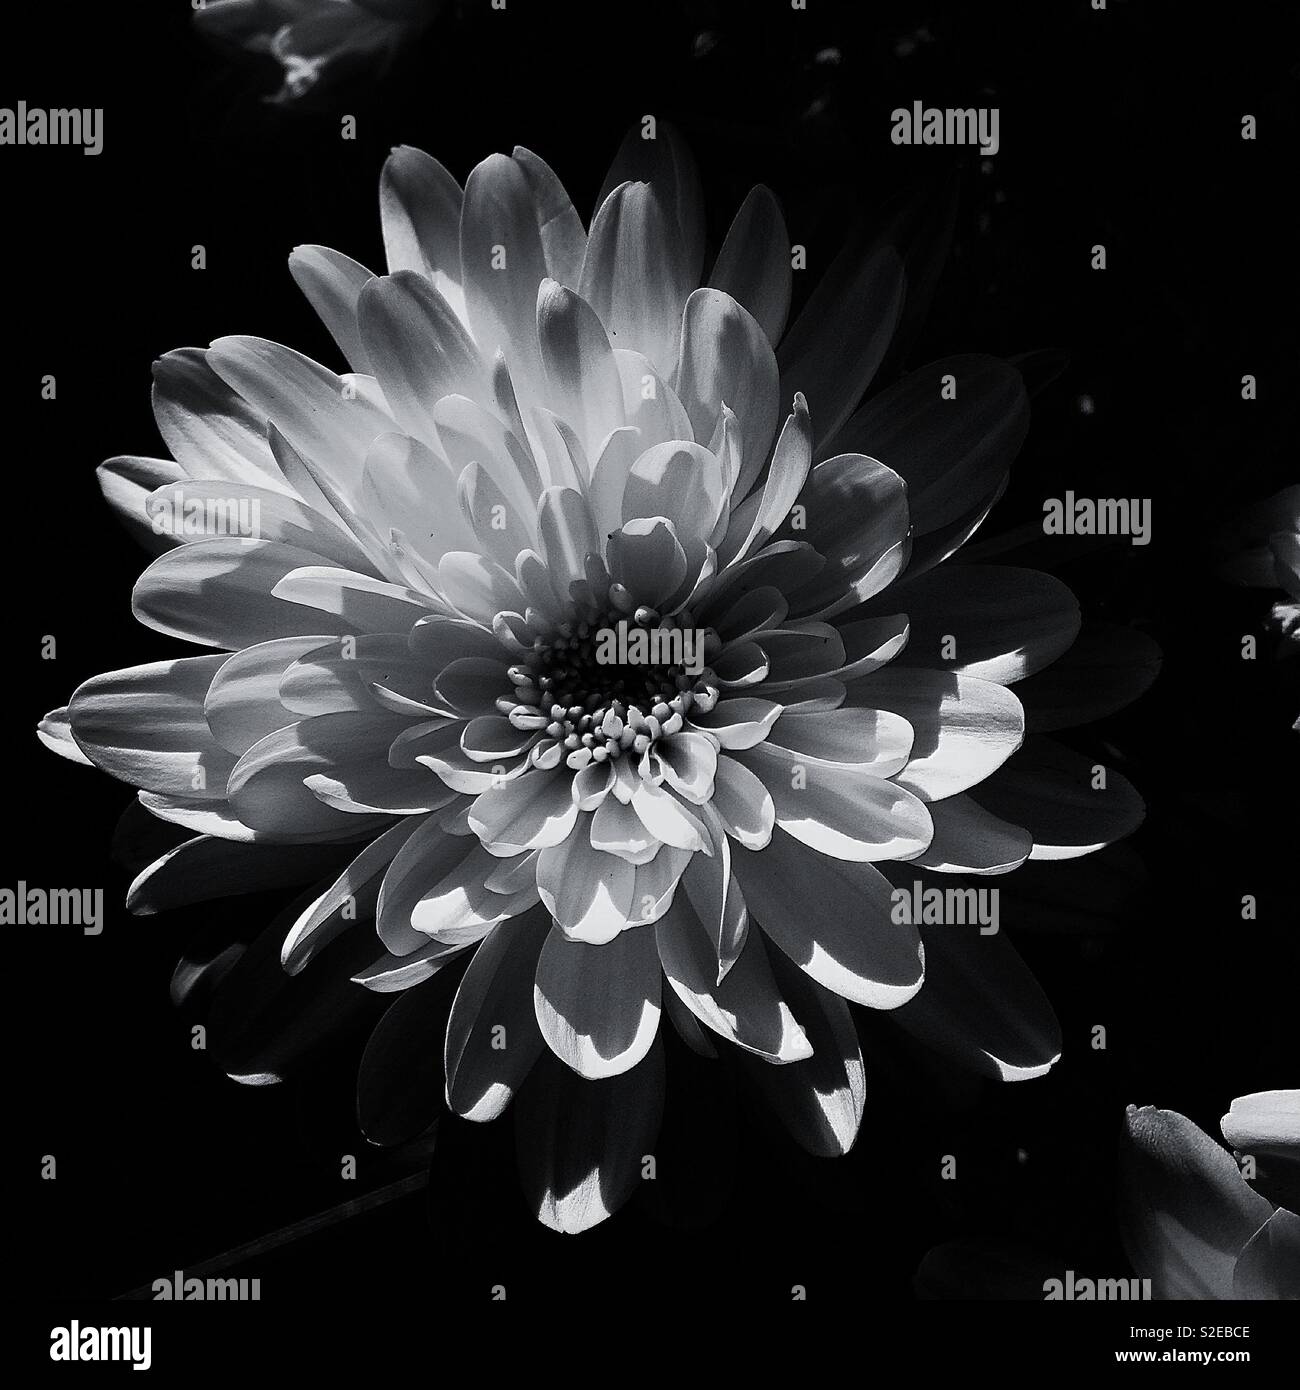 A B&W Foto, eine weiße Blume mit leicht extreme Kontraste von Schwarz und Weiß. Stockfoto